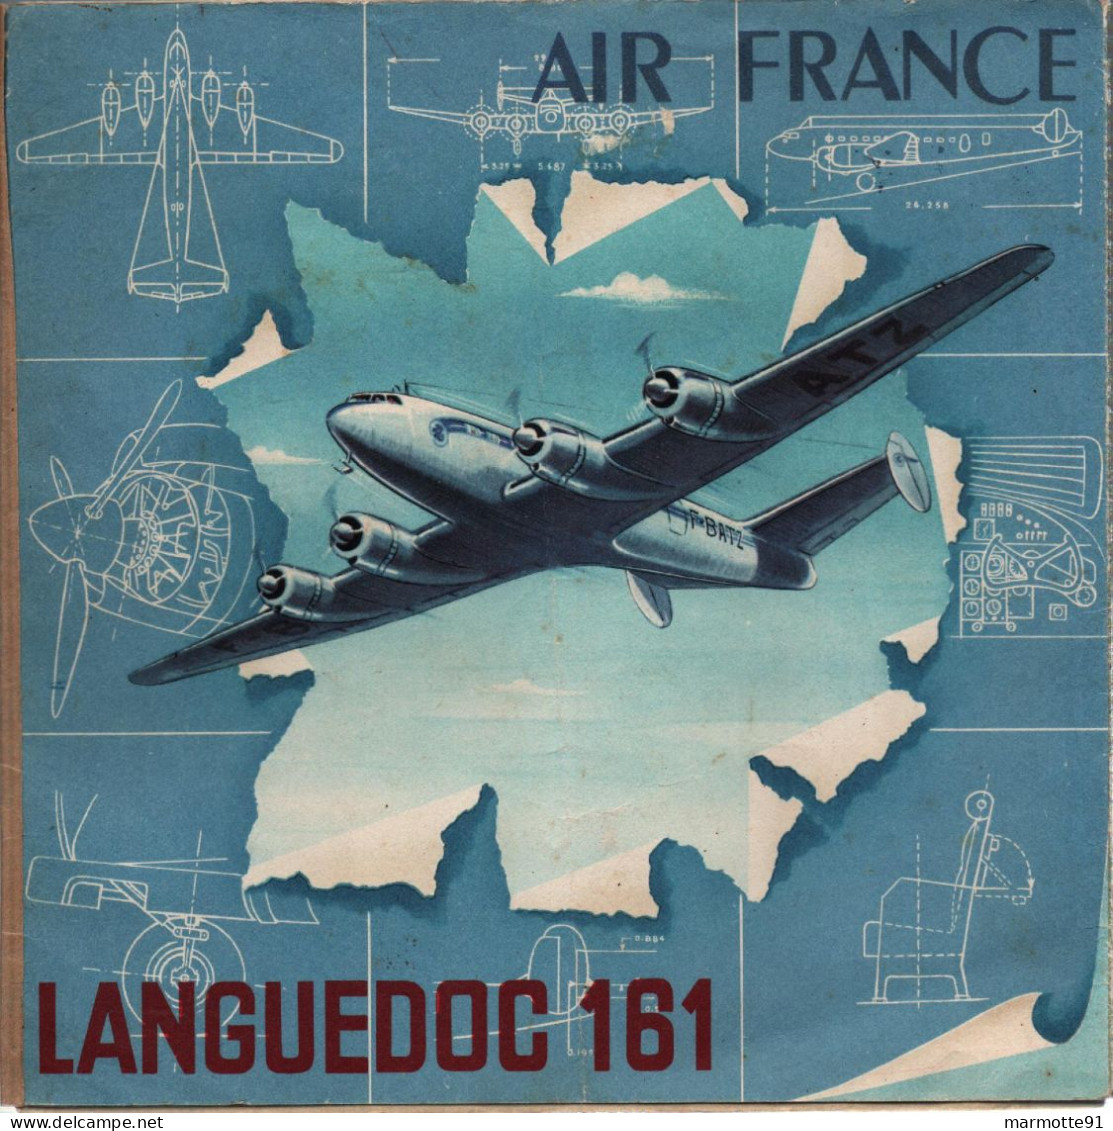 AIR FRANCE LANGUEDOC 161 1947 ??? BROCHURE PLAQUETTE PRESENTATION AVIATION CIVILE - Profielen